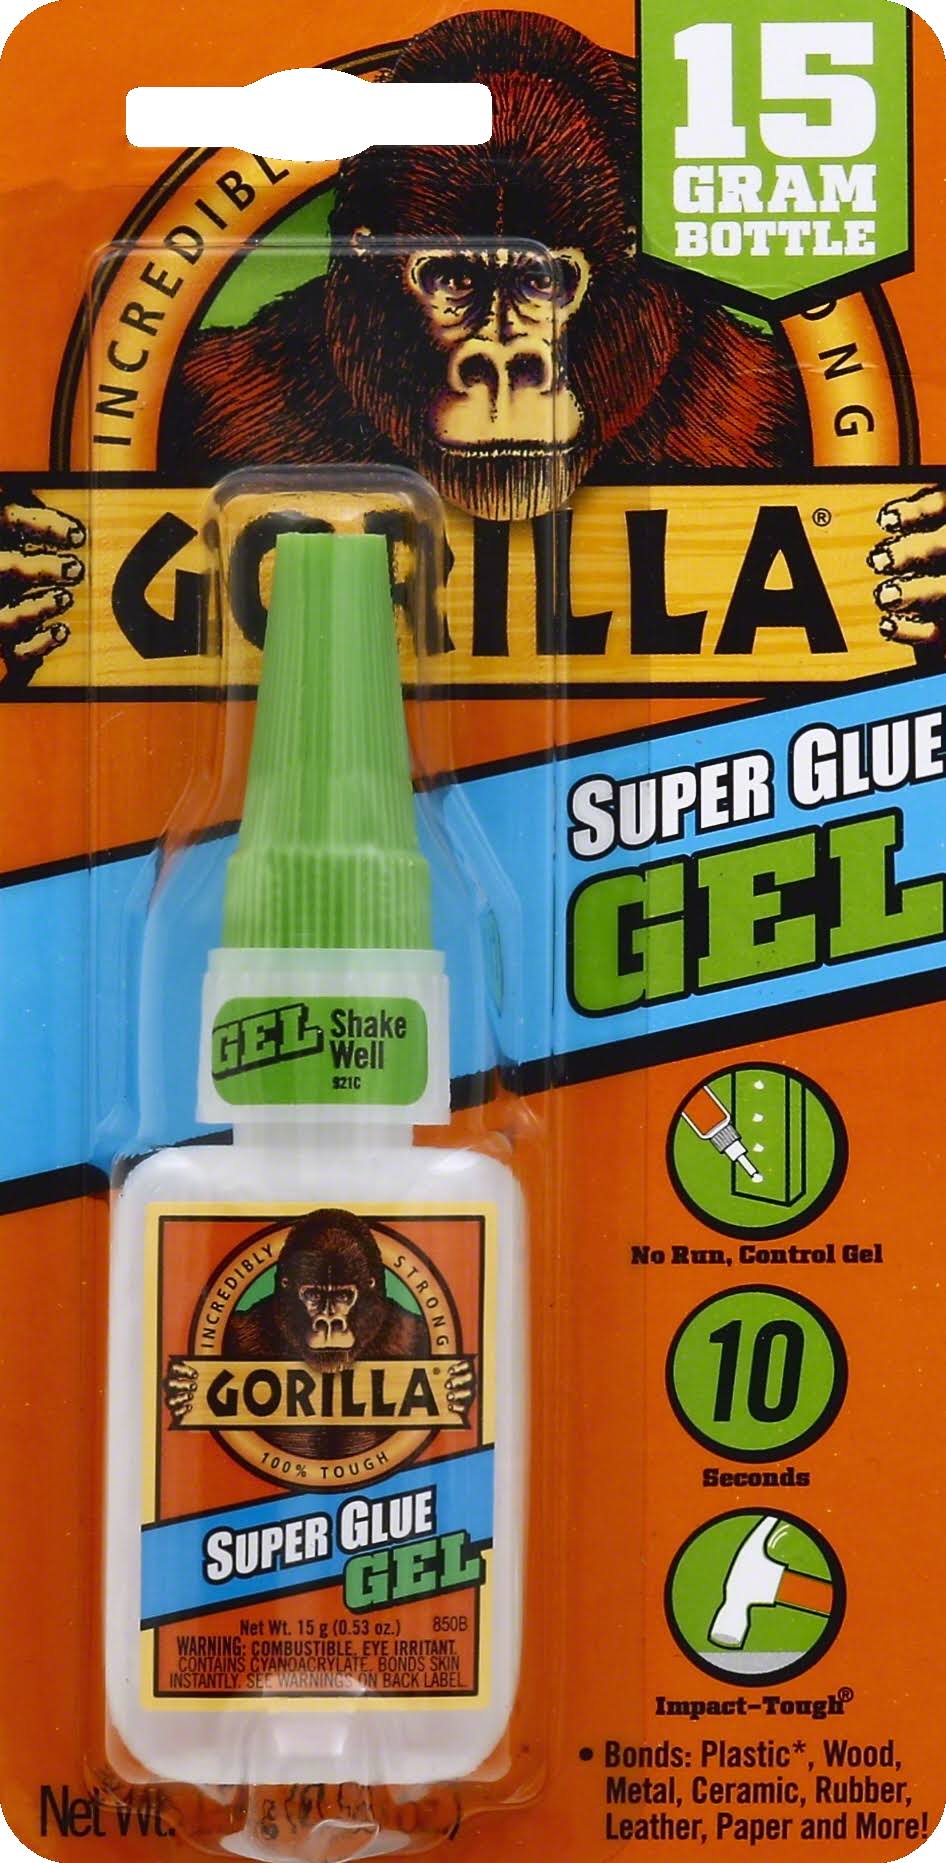 Gorilla Superglue 15G